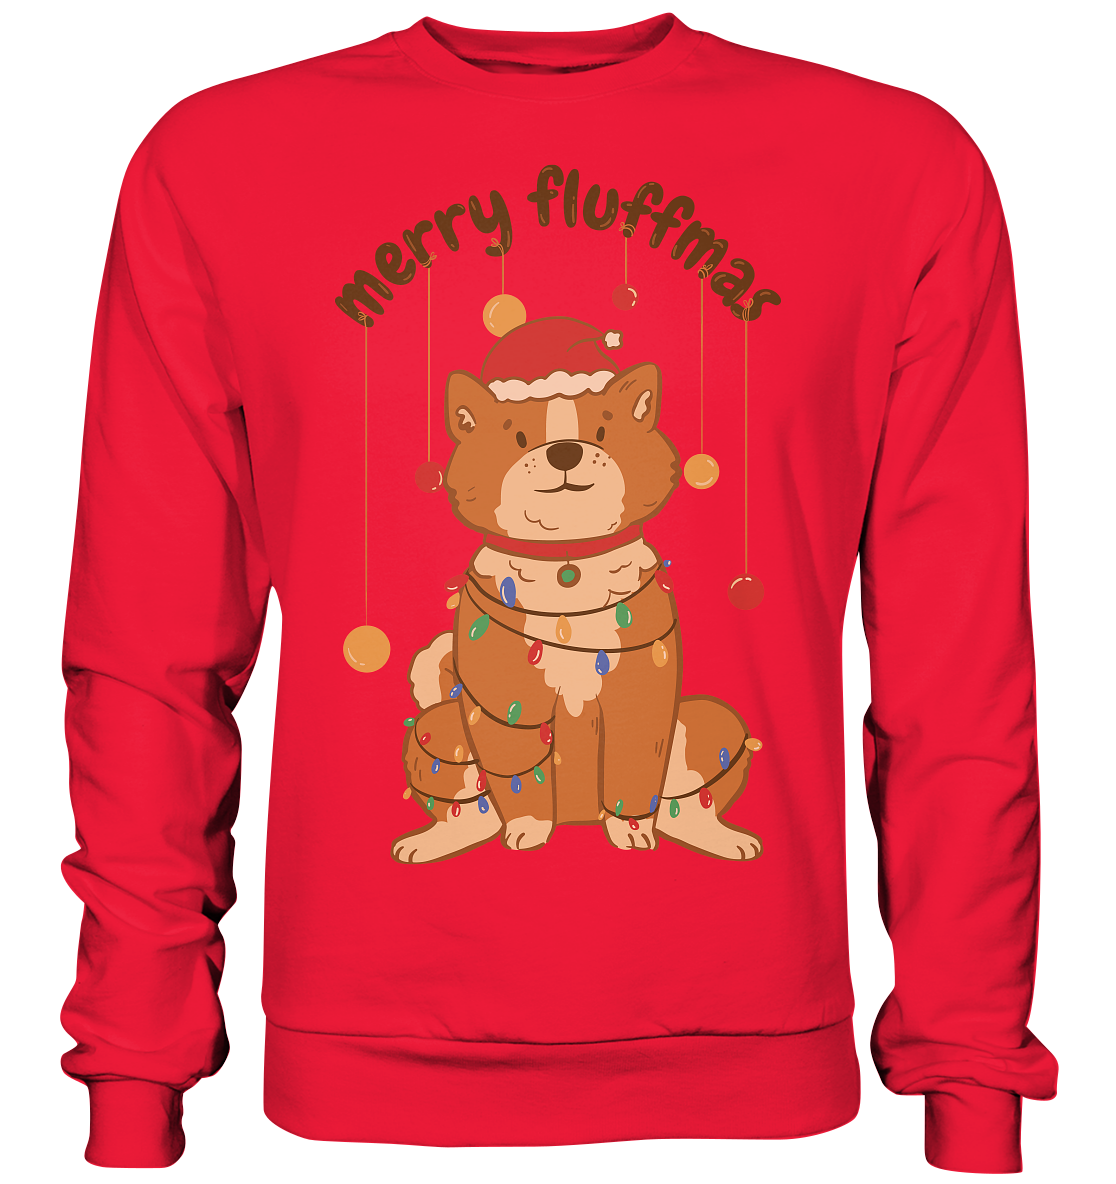 Weihnachtliches Motiv Fun Merry Fluffmas - Premium Sweatshirt